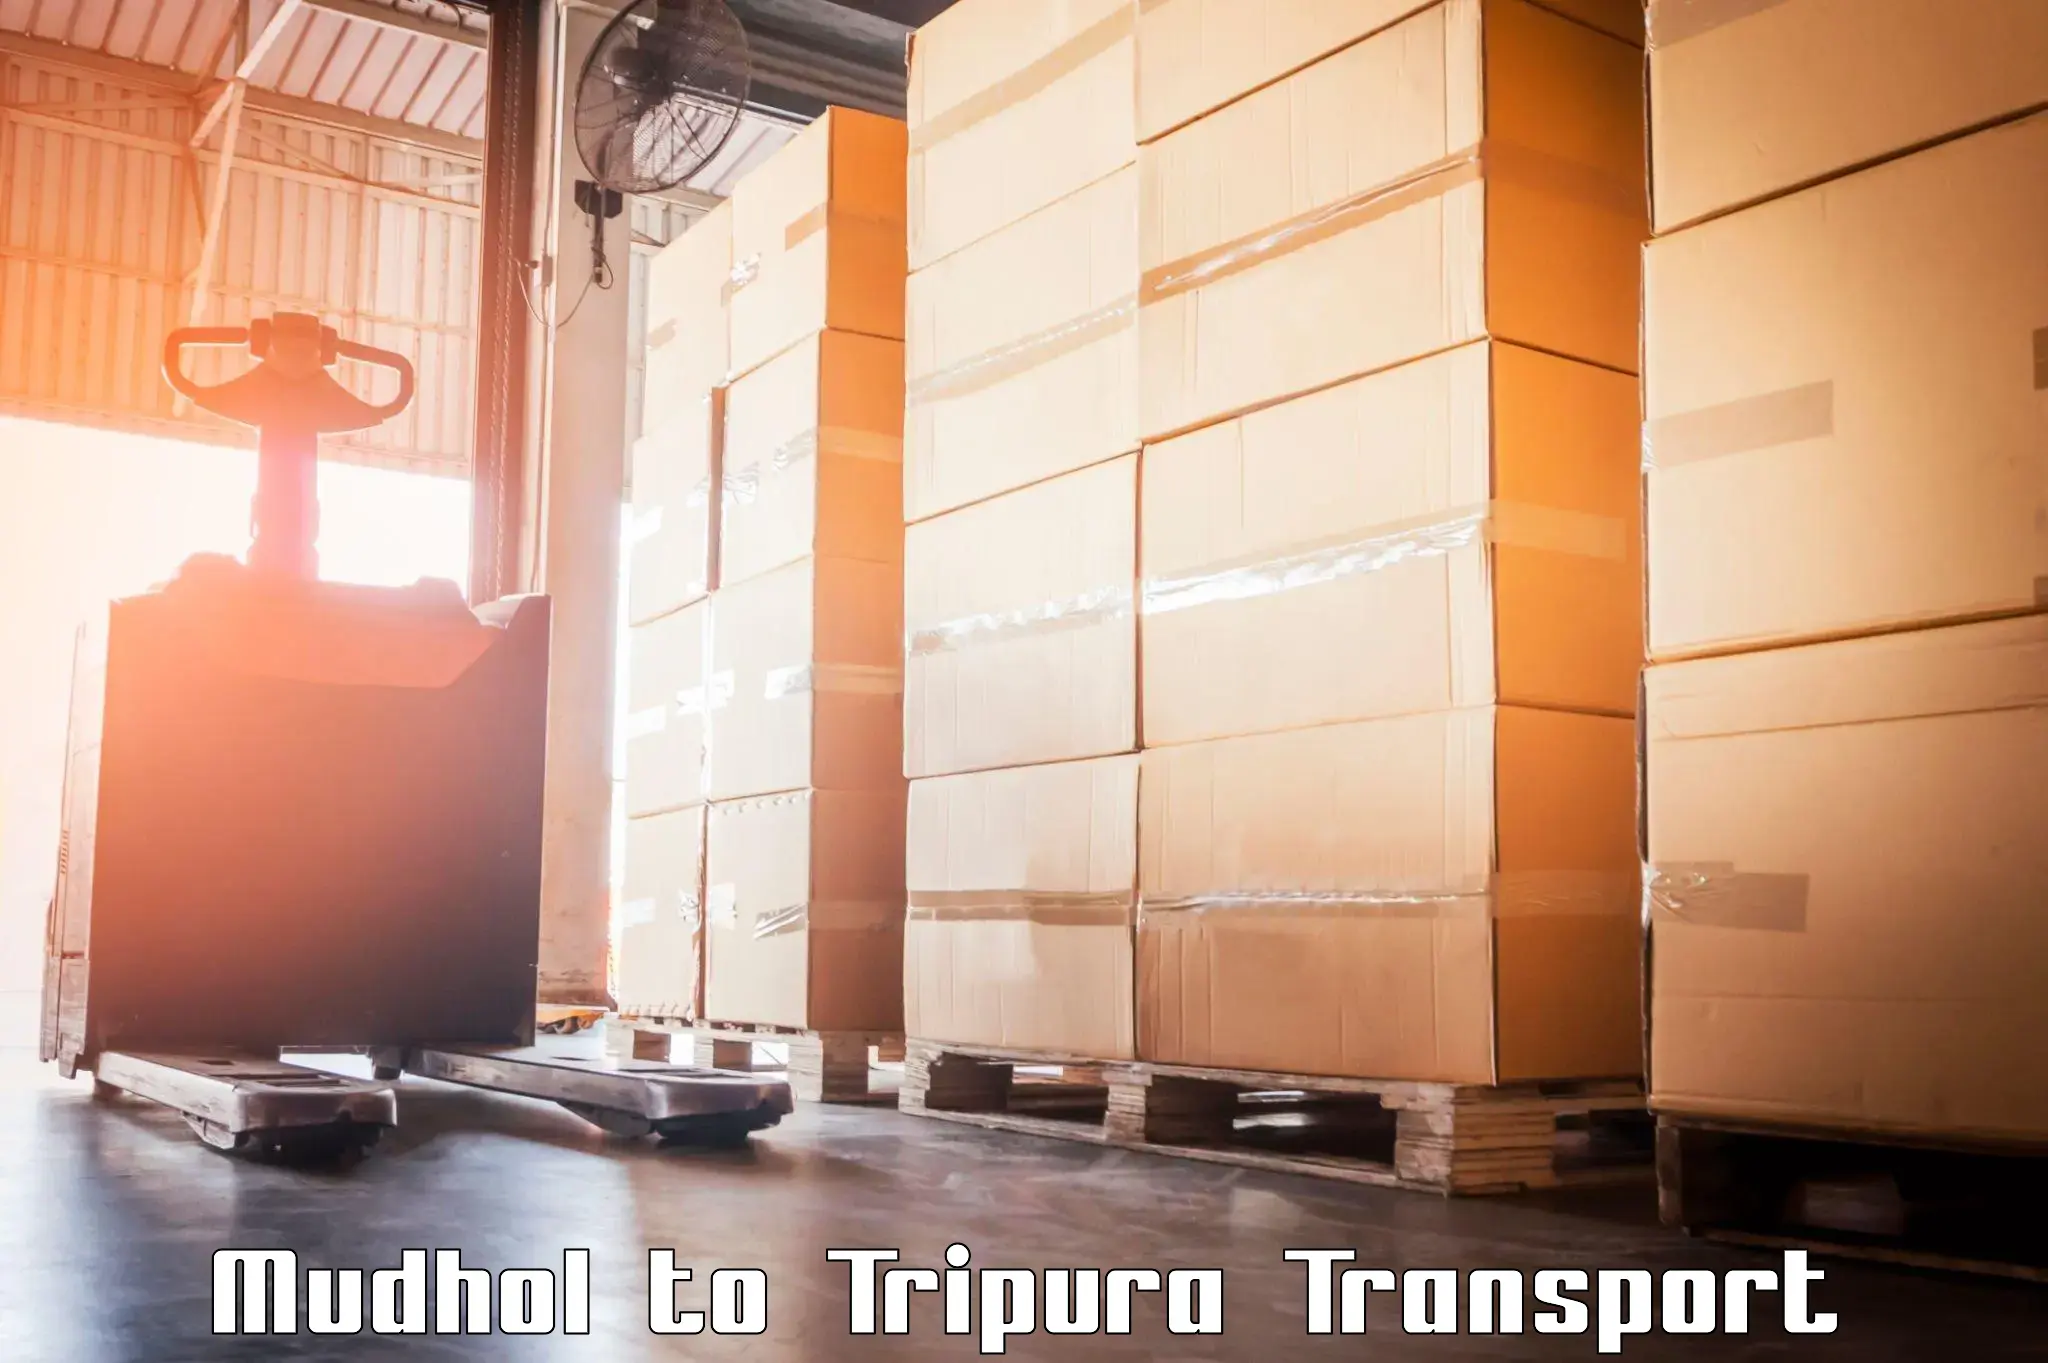 Online transport booking Mudhol to Manughat